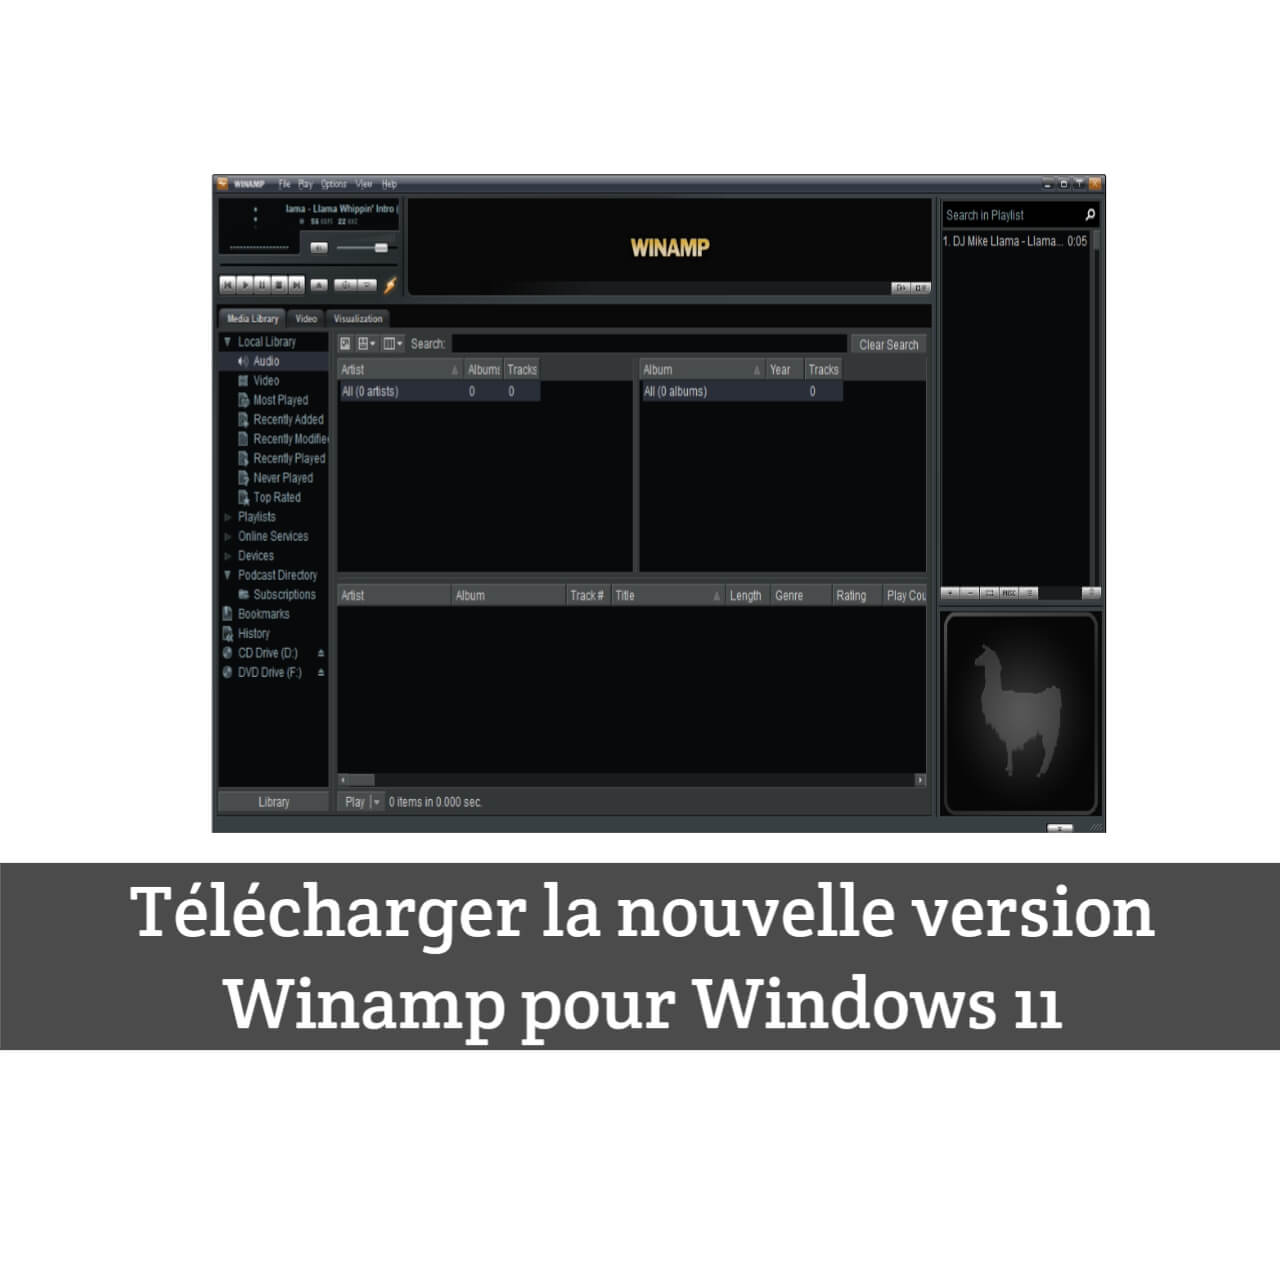 Télécharger la nouvelle version Winamp 5.9 pour Windows 11.